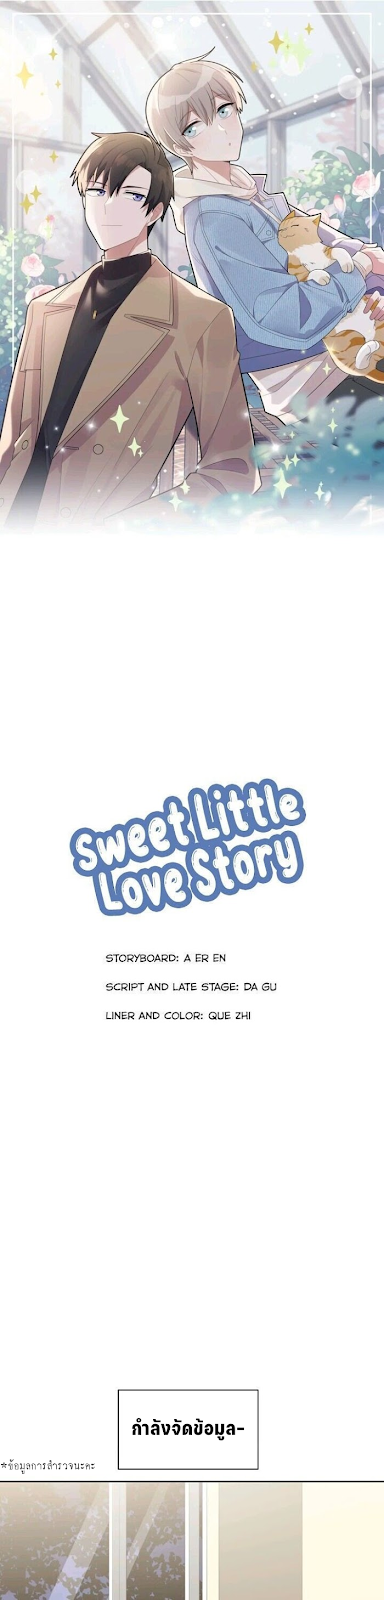 Sweet Little Love Story8 03